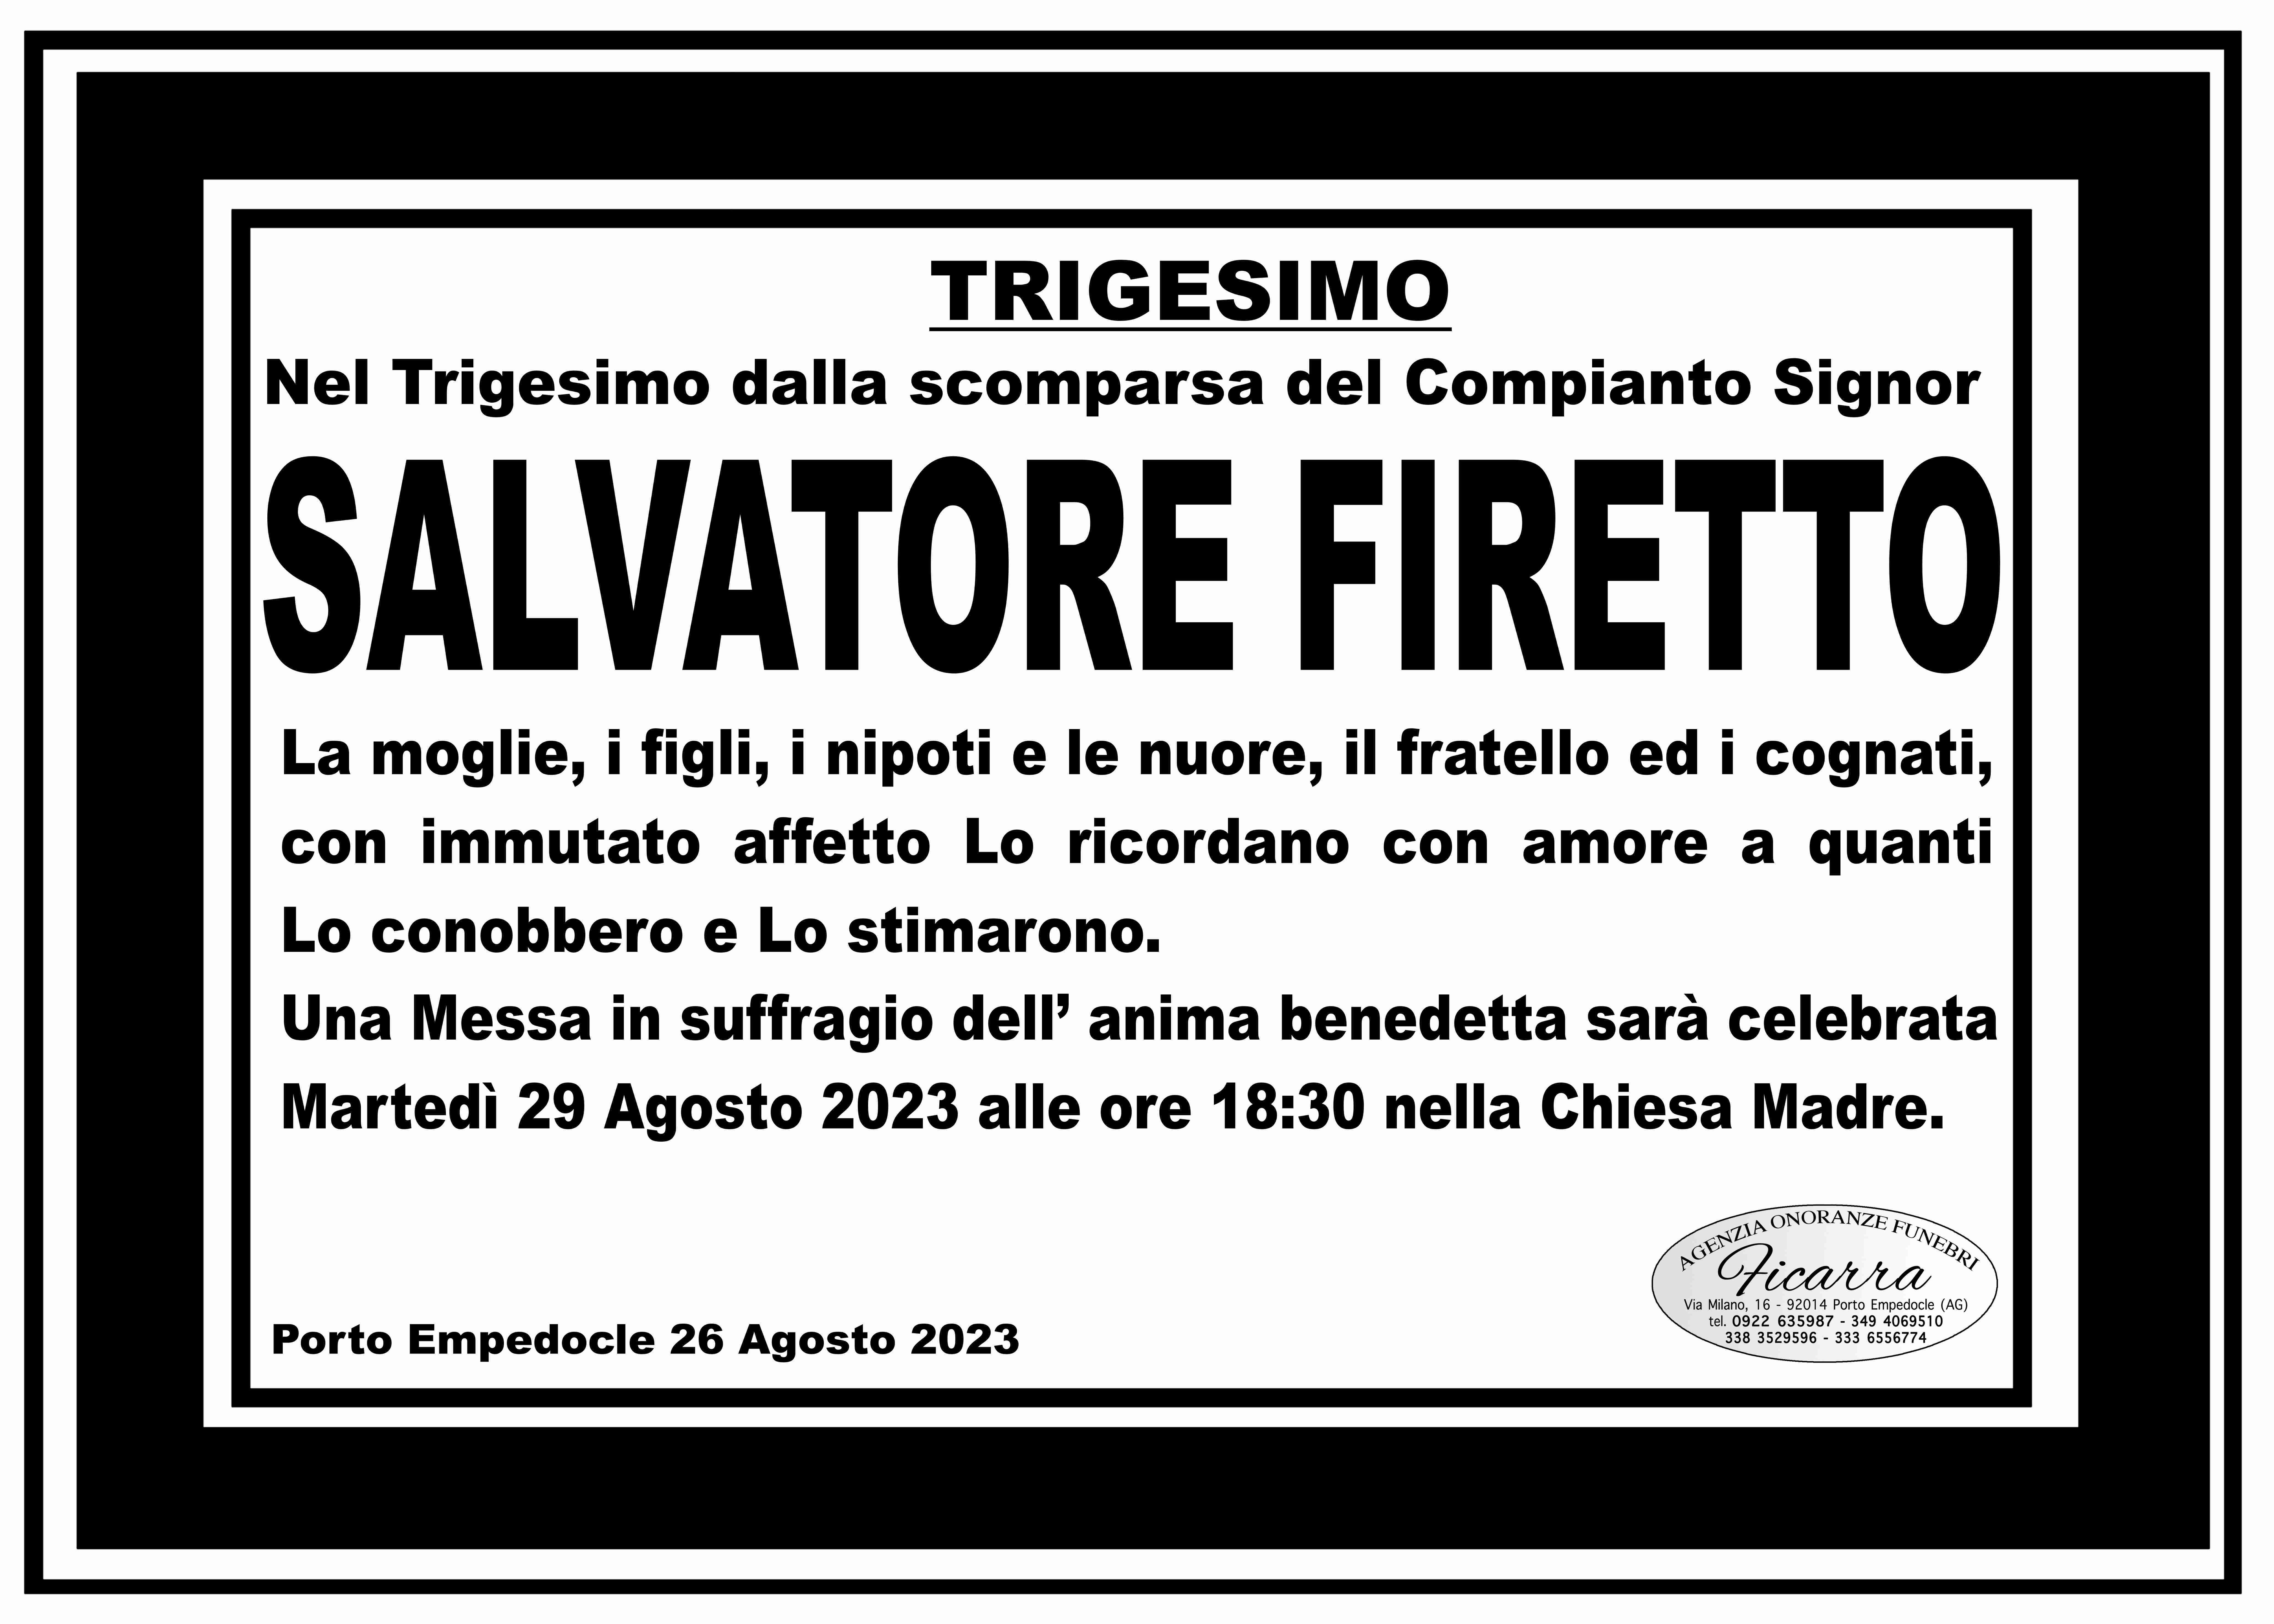 Salvatore Firetto